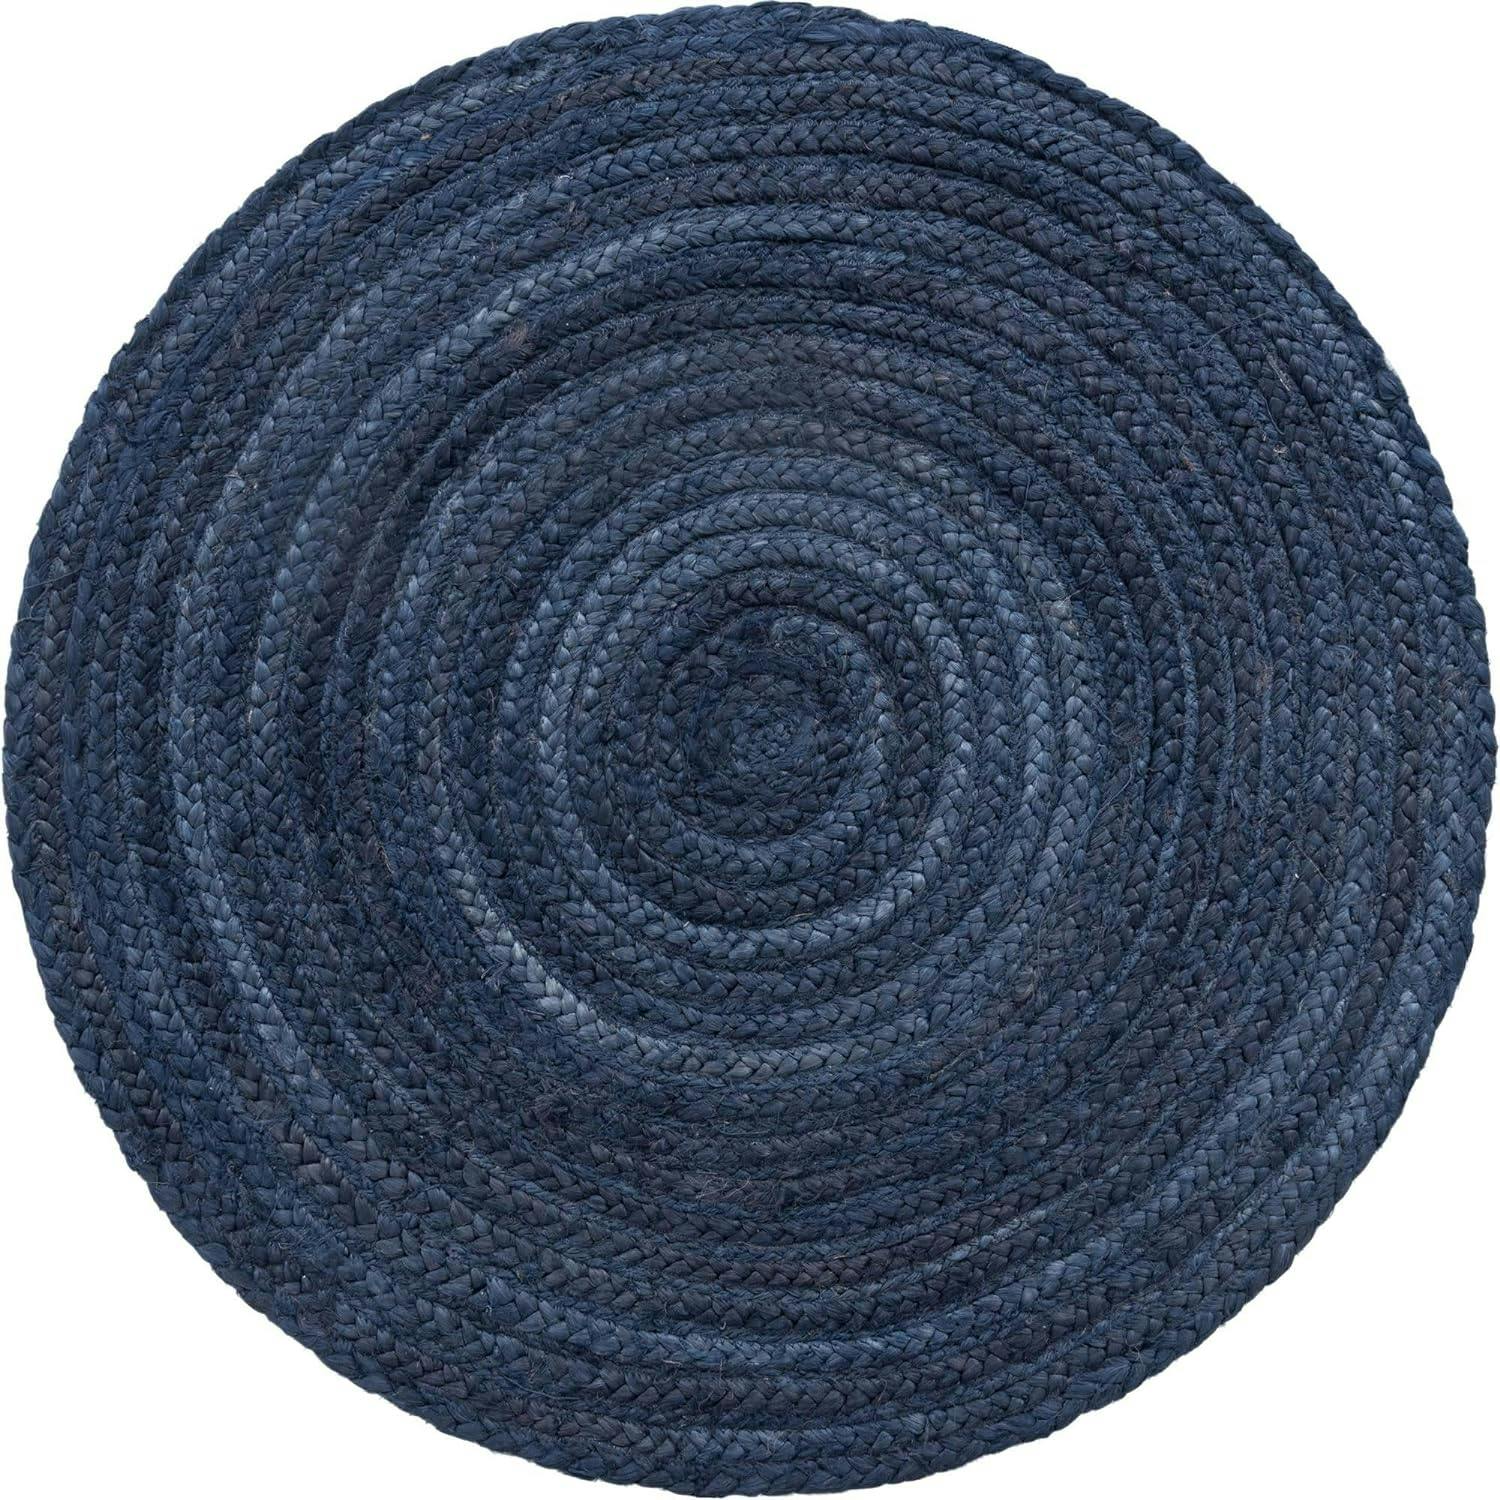 Handmade Navy Blue Braided Jute 3'3" Round Rug